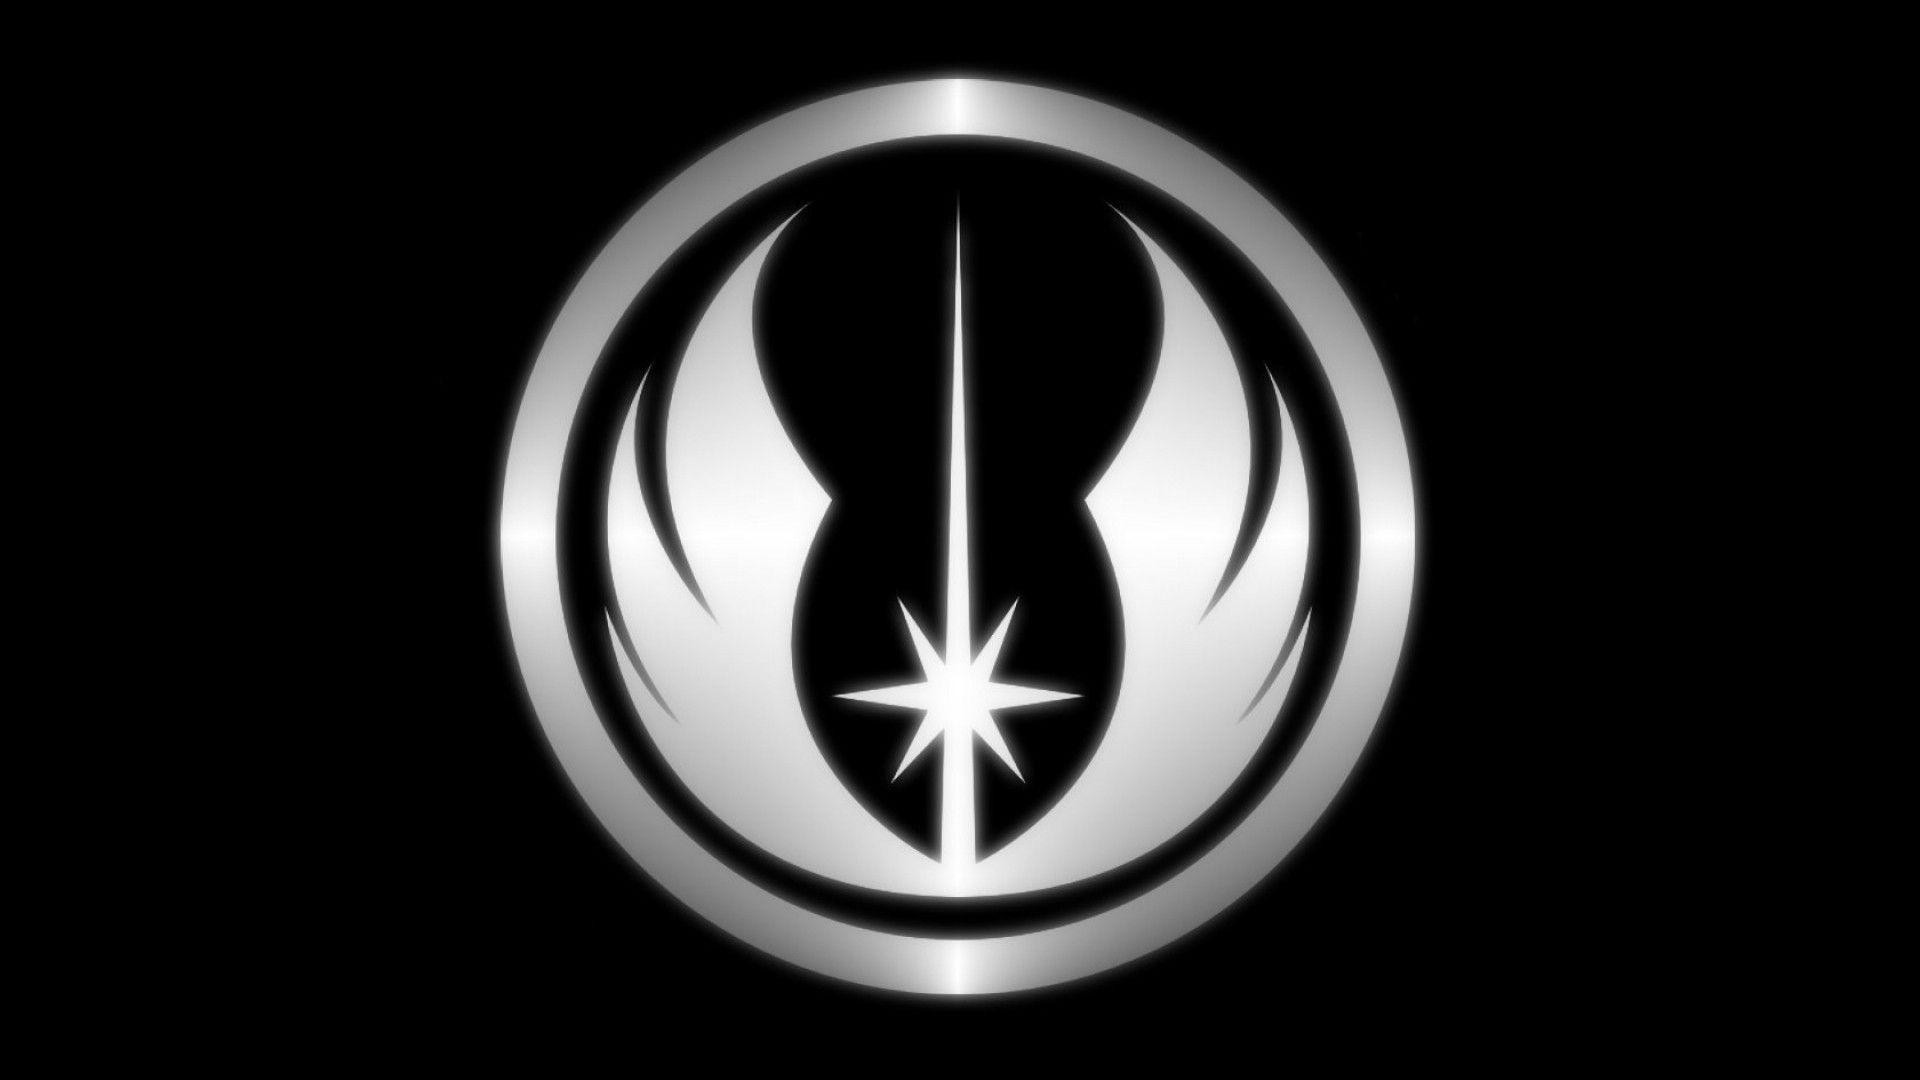 Star Wars Jedi Symbol Wallpaper.